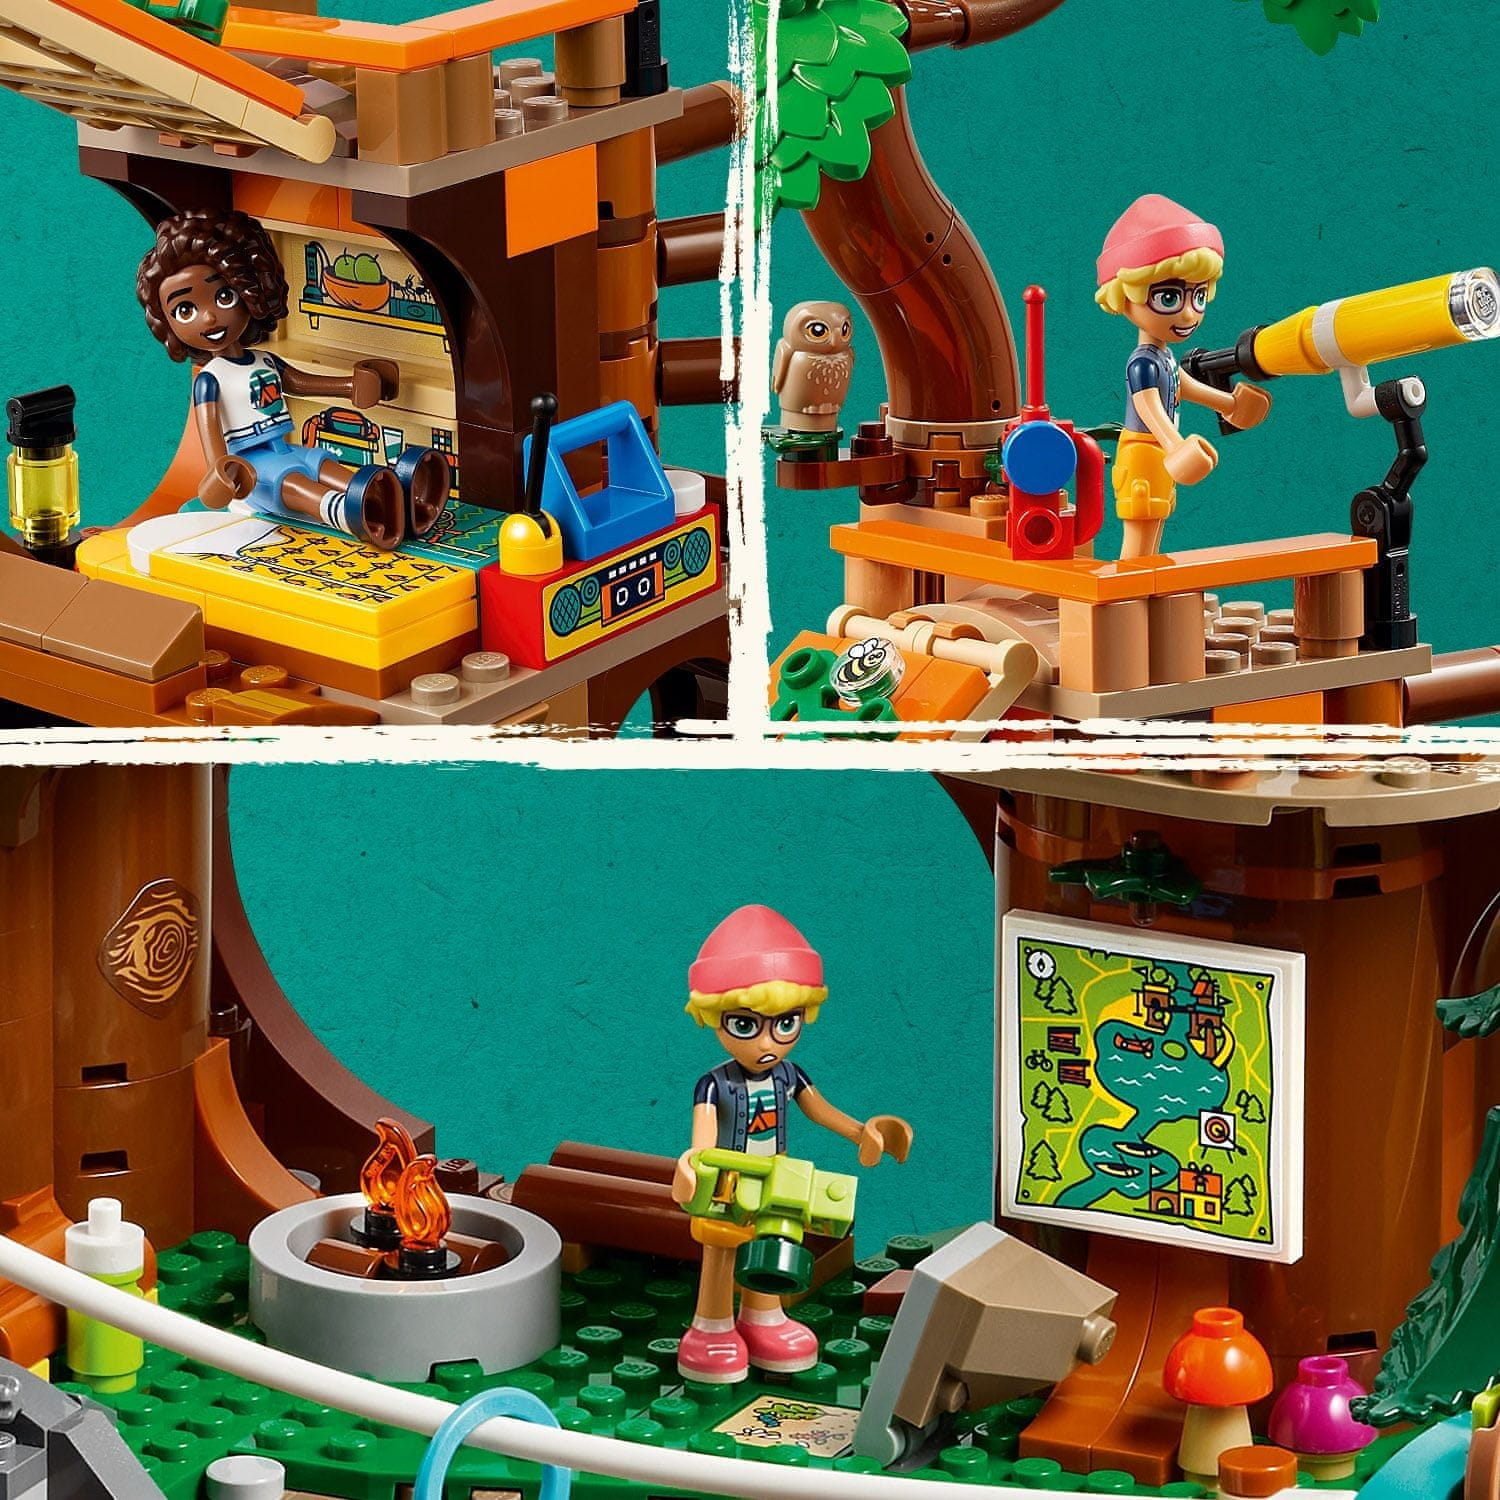 LEGO Friends 42631 Dobrodružný tábor – dům na stromě